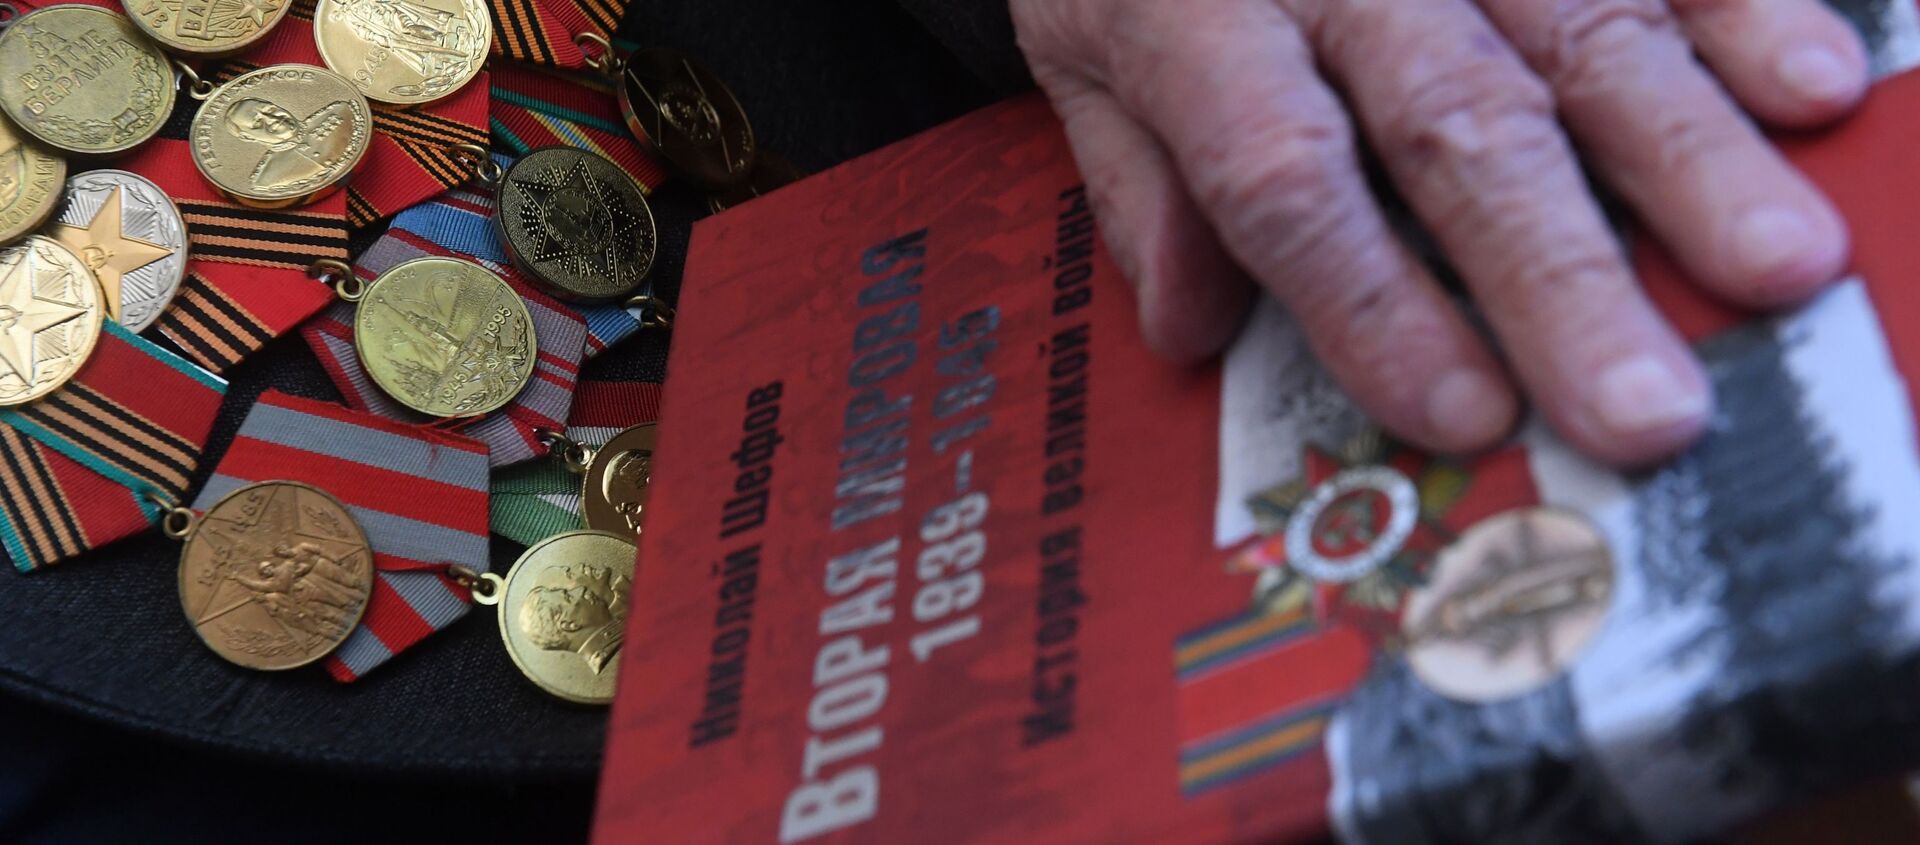 Медали и книга ветерана Великой Отечественной войны, фото из архива - Sputnik Azərbaycan, 1920, 29.04.2021